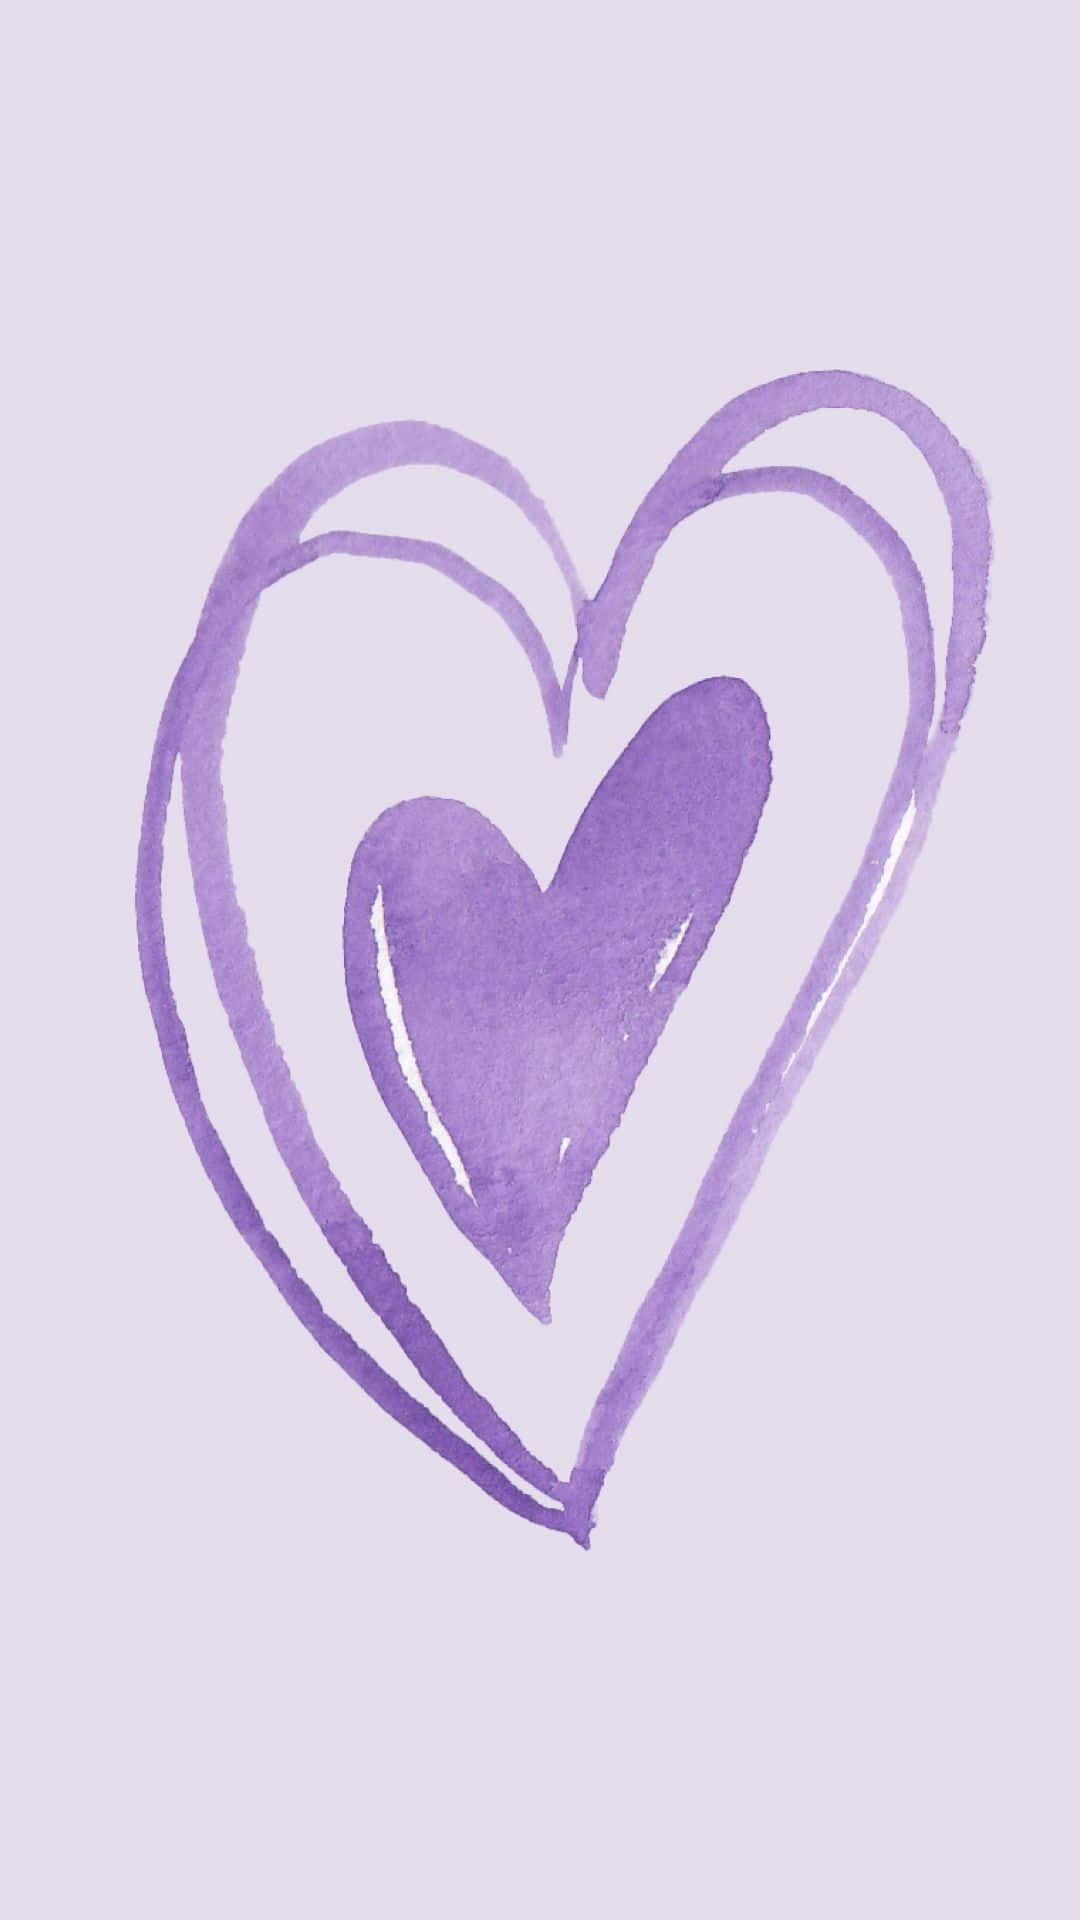 Rendiendohomenaje A Nuestros Héroes Con El Corazón Púrpura